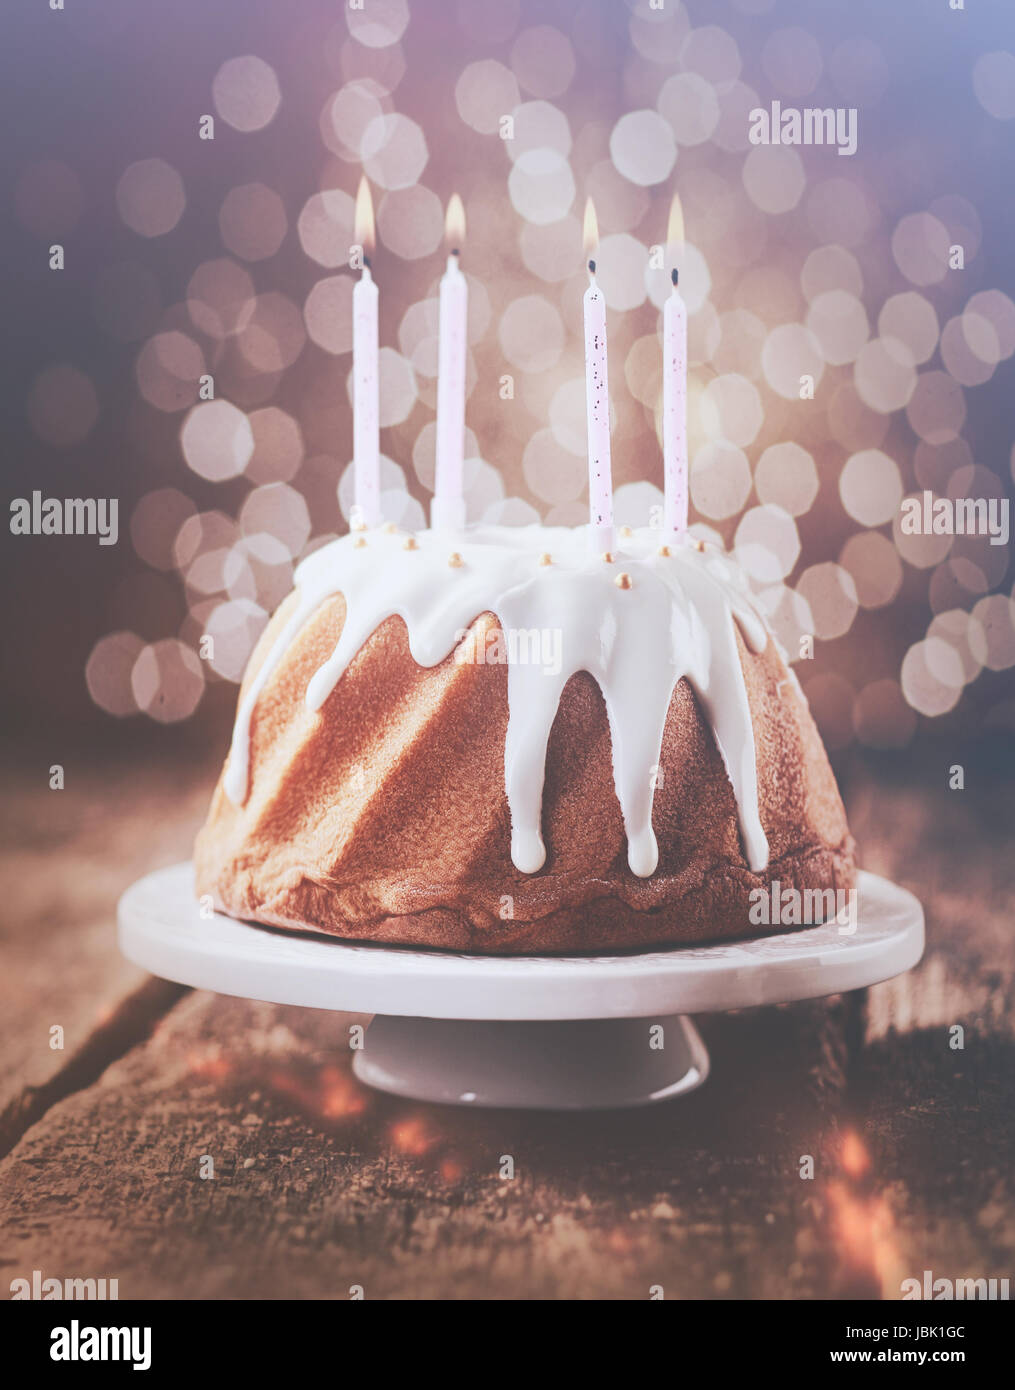 Retrò effetto vintage torta di compleanno con vetrate gocciolamento glassa  bianca decorata con perle e guarnita con quattro parti di masterizzazione  candele con uno sfondo bokeh di luci scintillanti Foto stock 